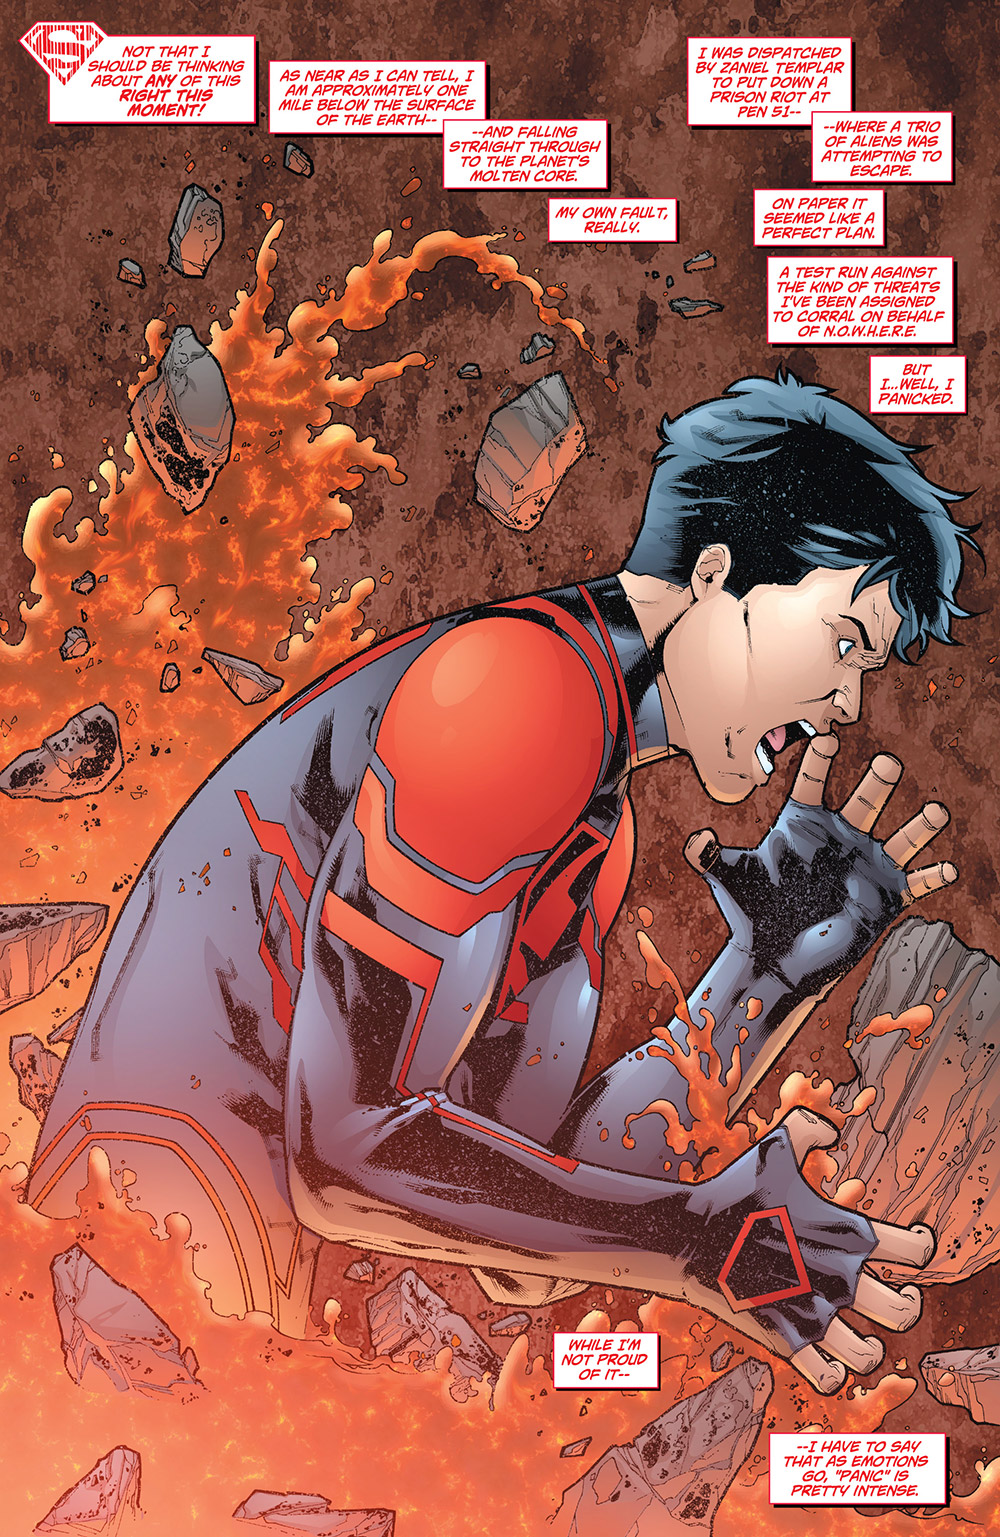 Superboy #3: Superboy a mile under the earth.